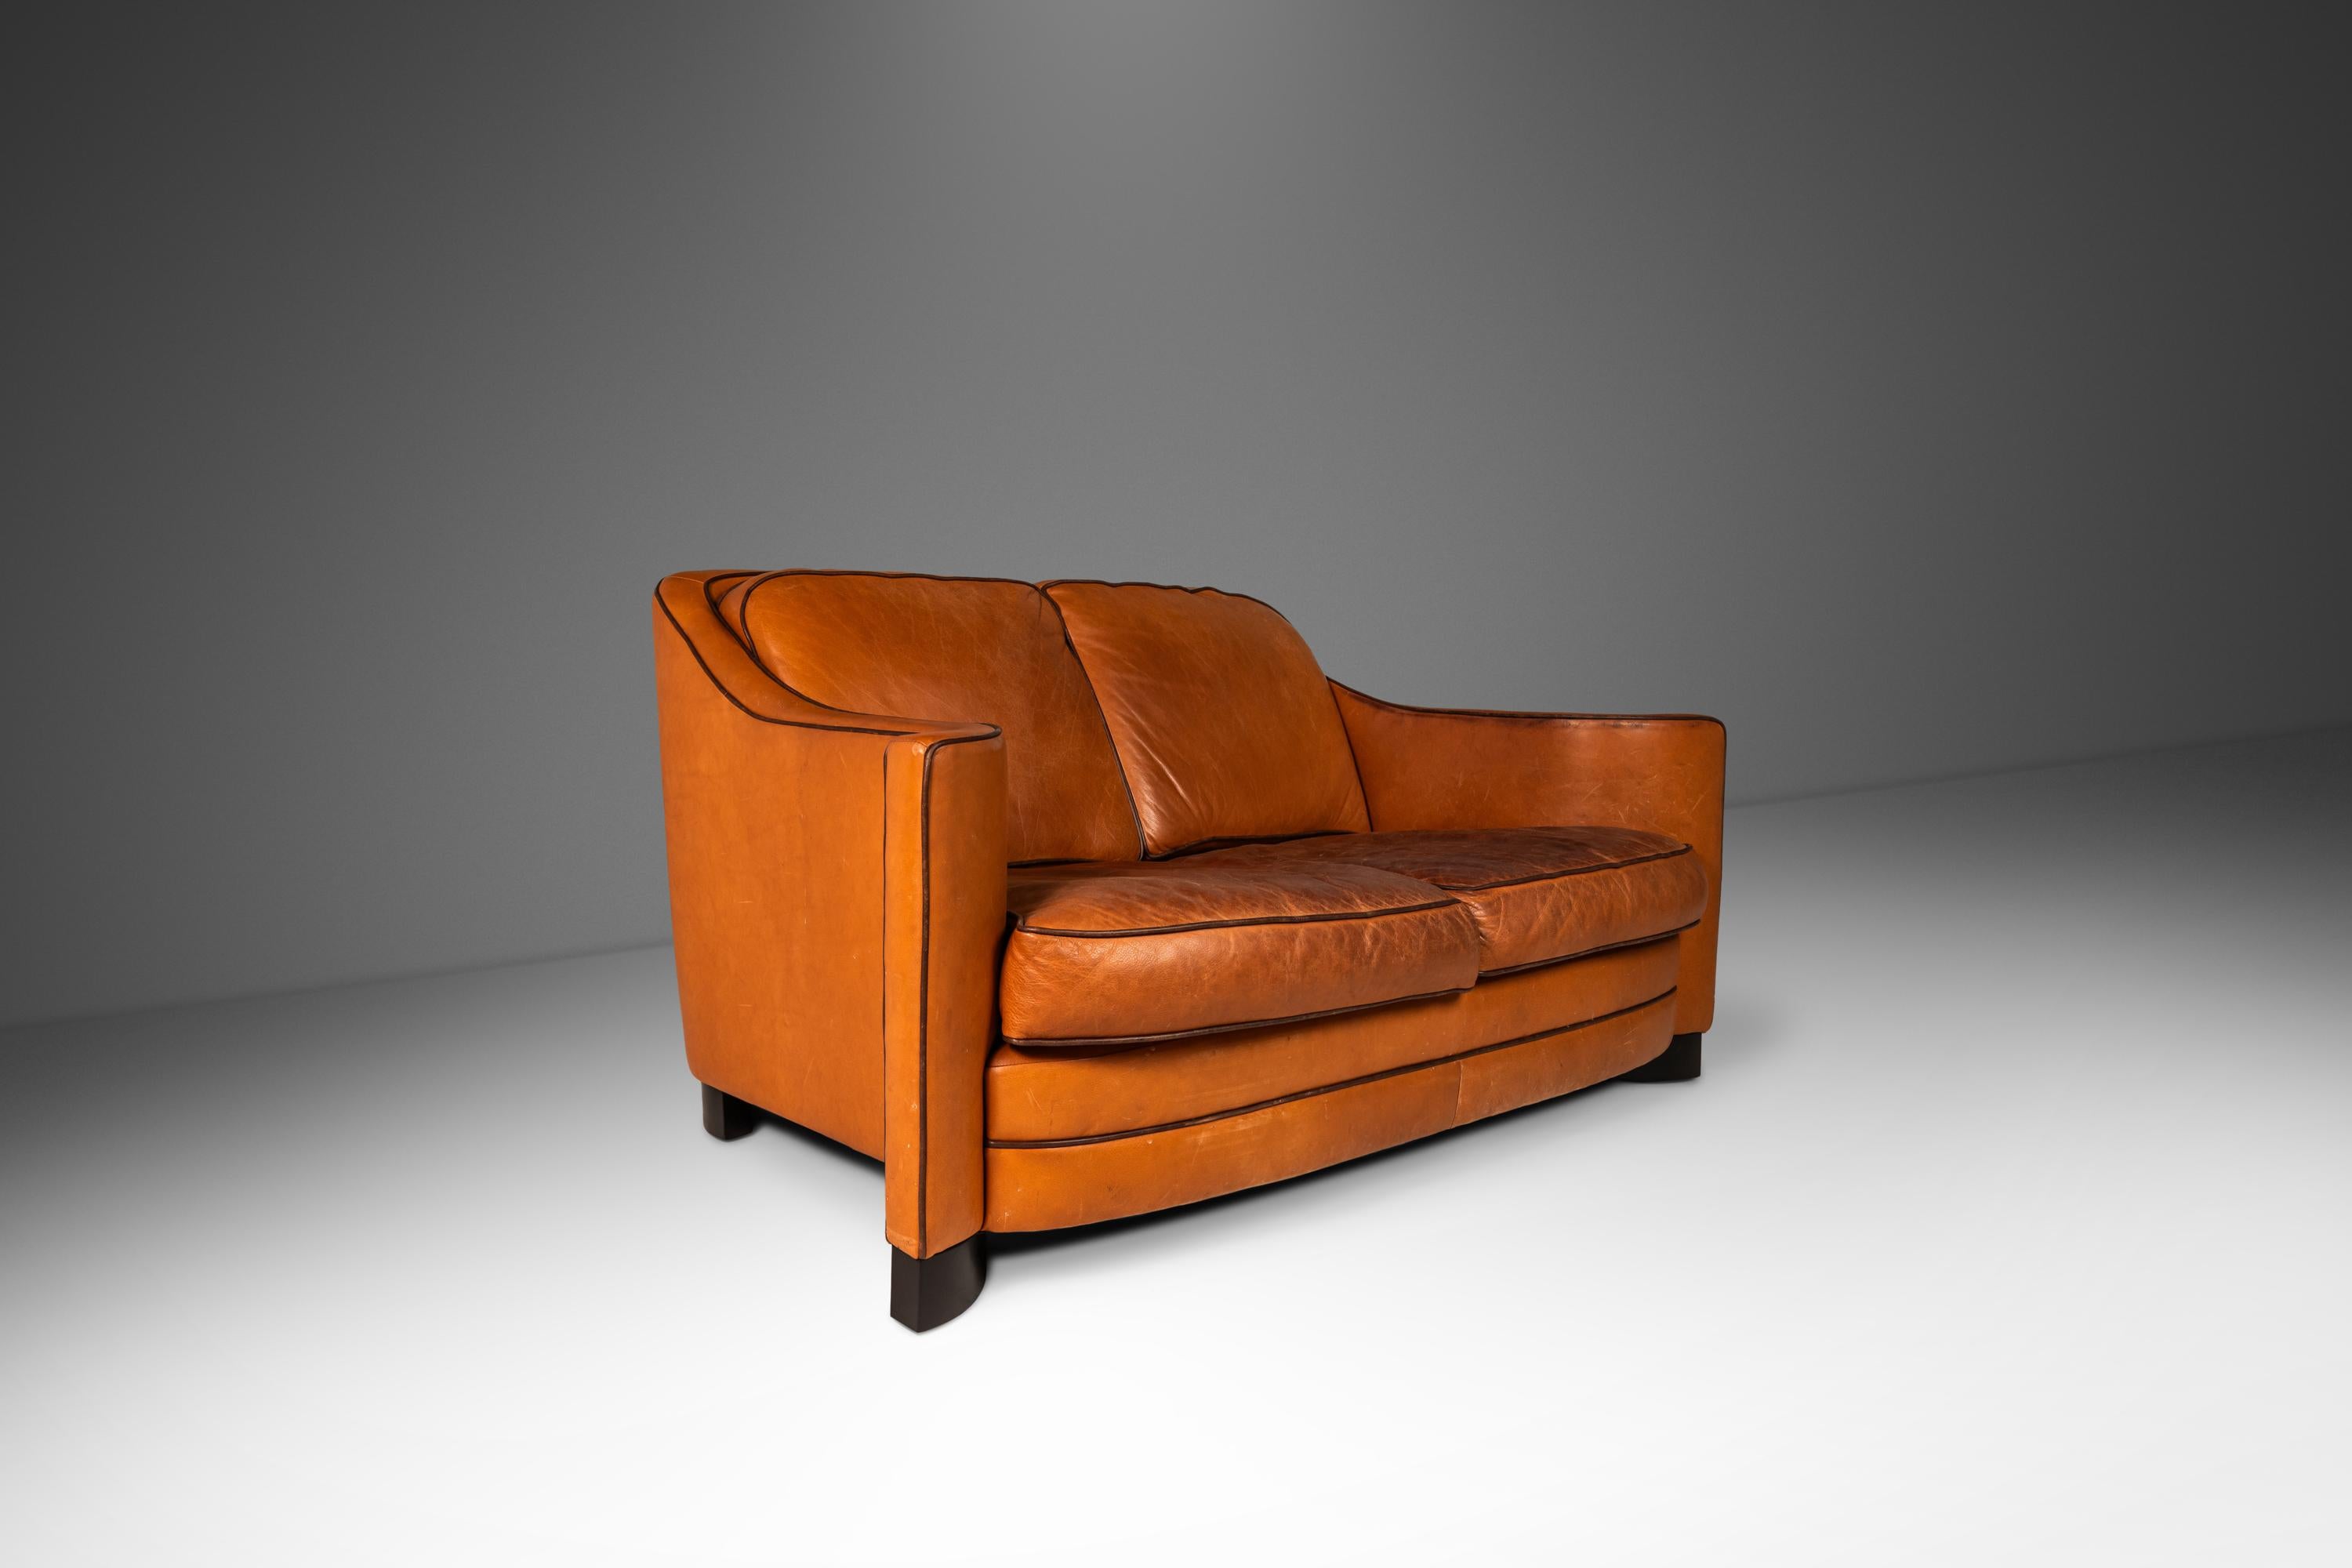 Dieses architektonisch beeindruckende und äußerst bequeme Dreisitzer-Sofa hat Designern und Sammlern gleichermaßen viel zu bieten. Mit seinen vom Art-Déco inspirierten, geschwungenen Armlehnen und den kunstvoll geschnitzten, geschwungenen Füßen